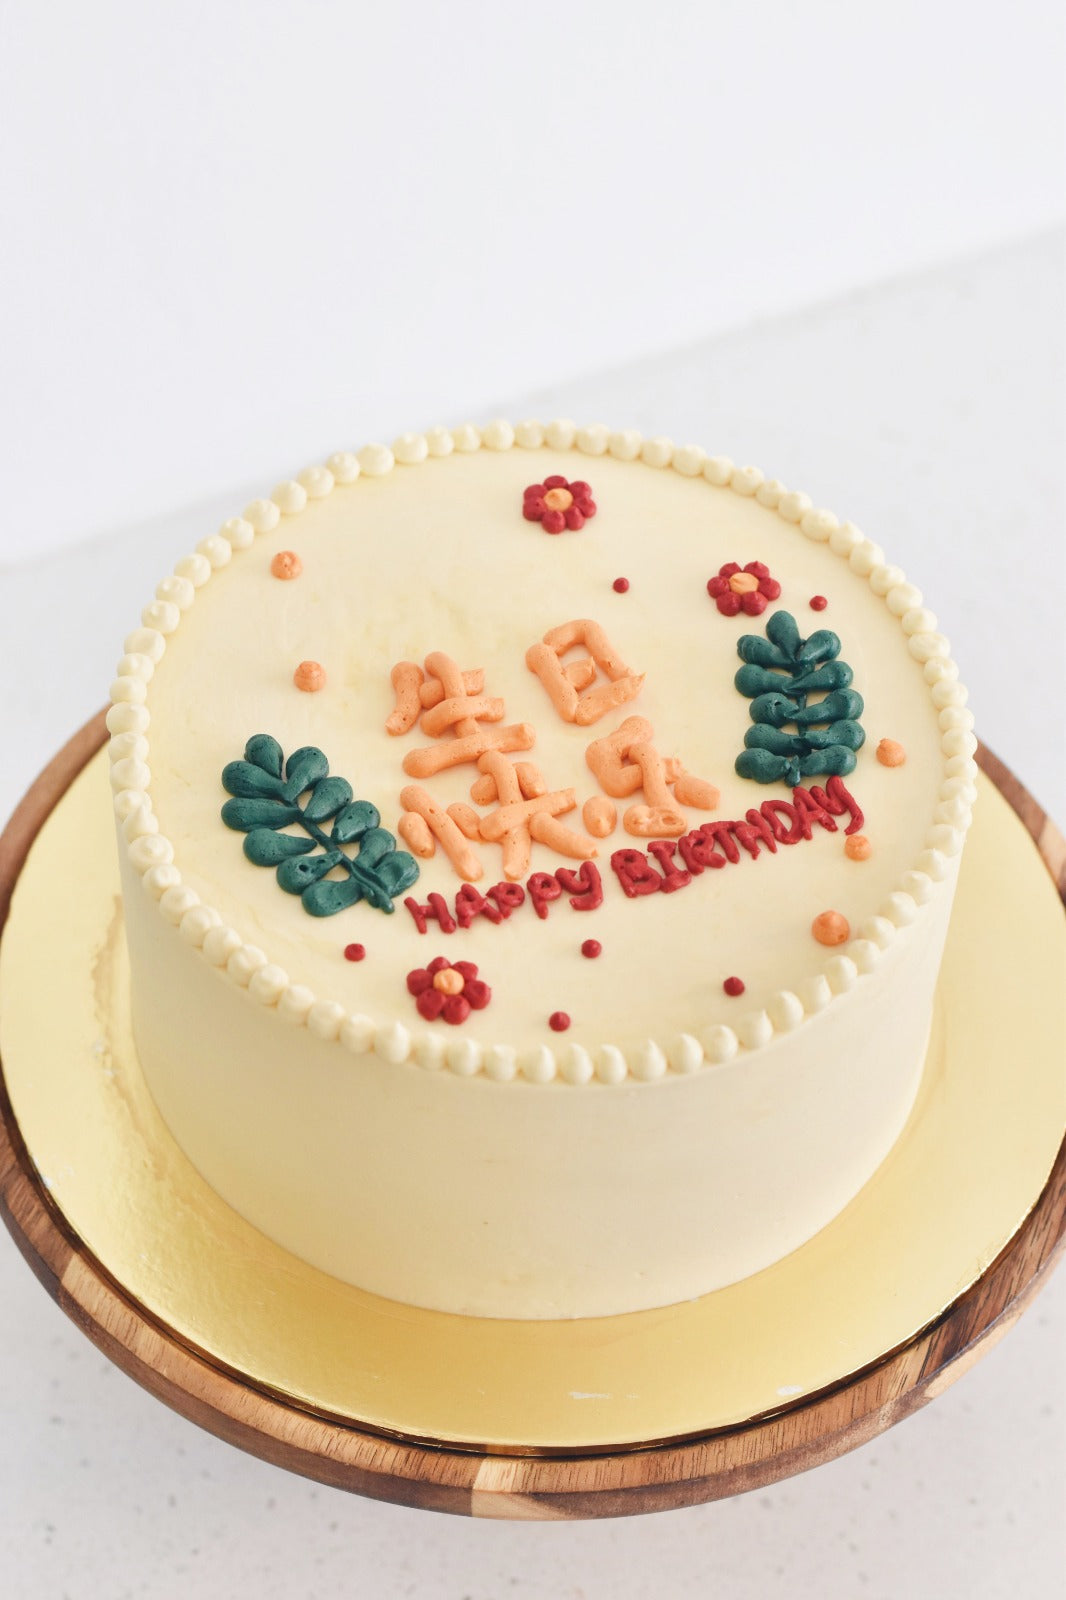 Happy Birthday Korean Style Cake l Zee & Elle